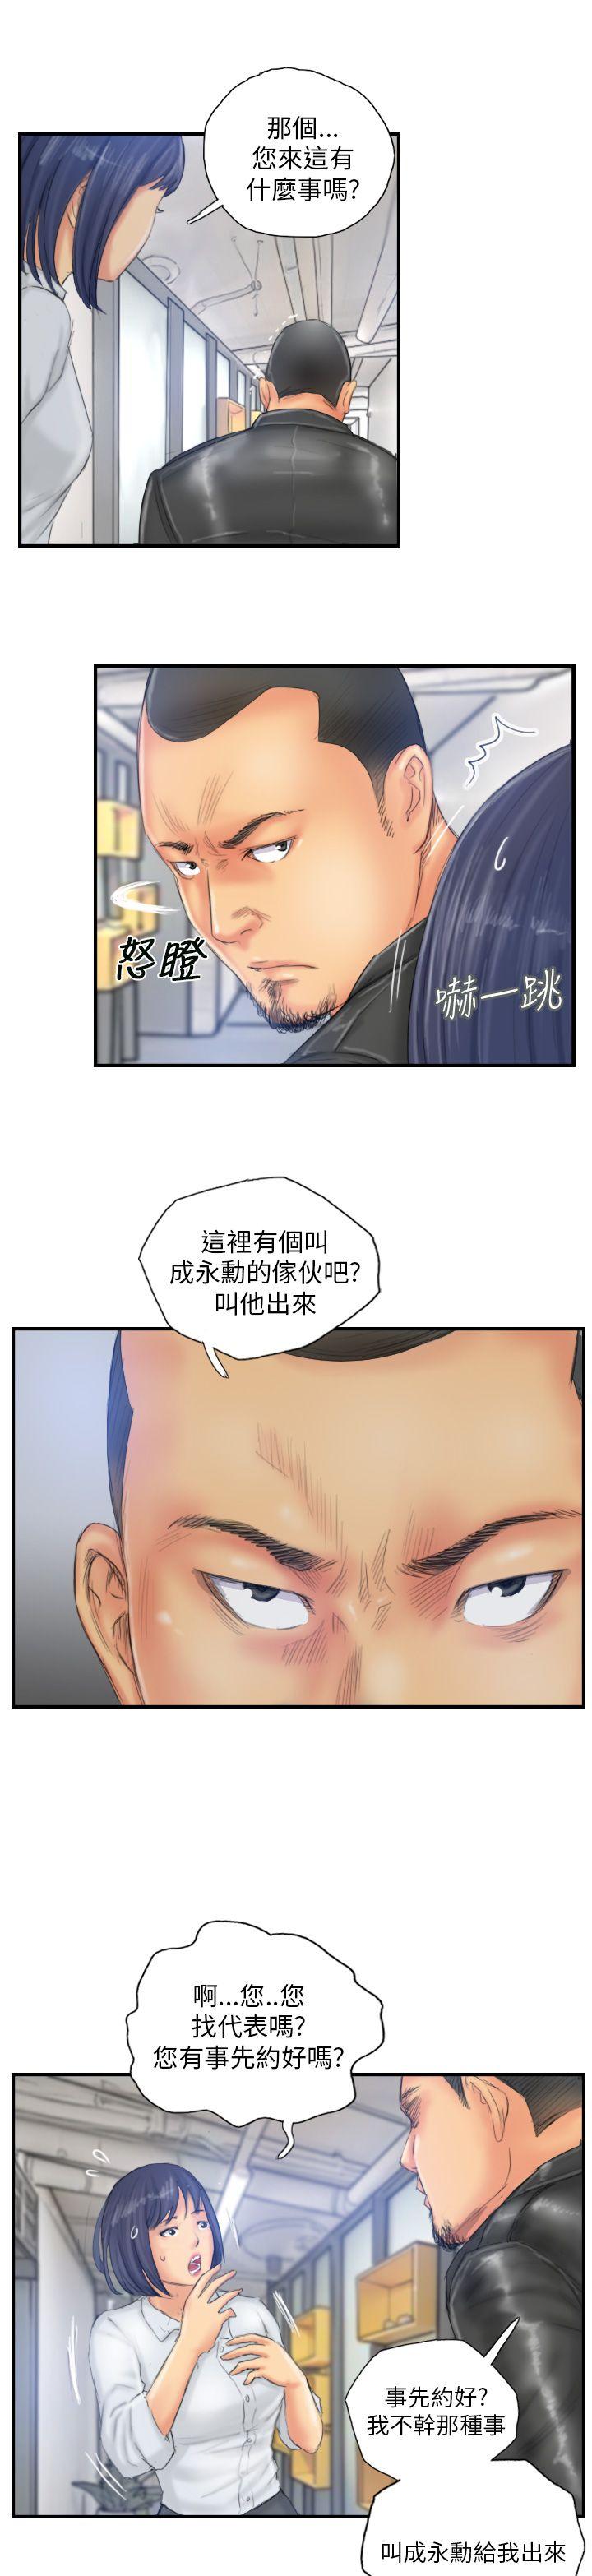 韩国污漫画 NEW FACE 第28话 19